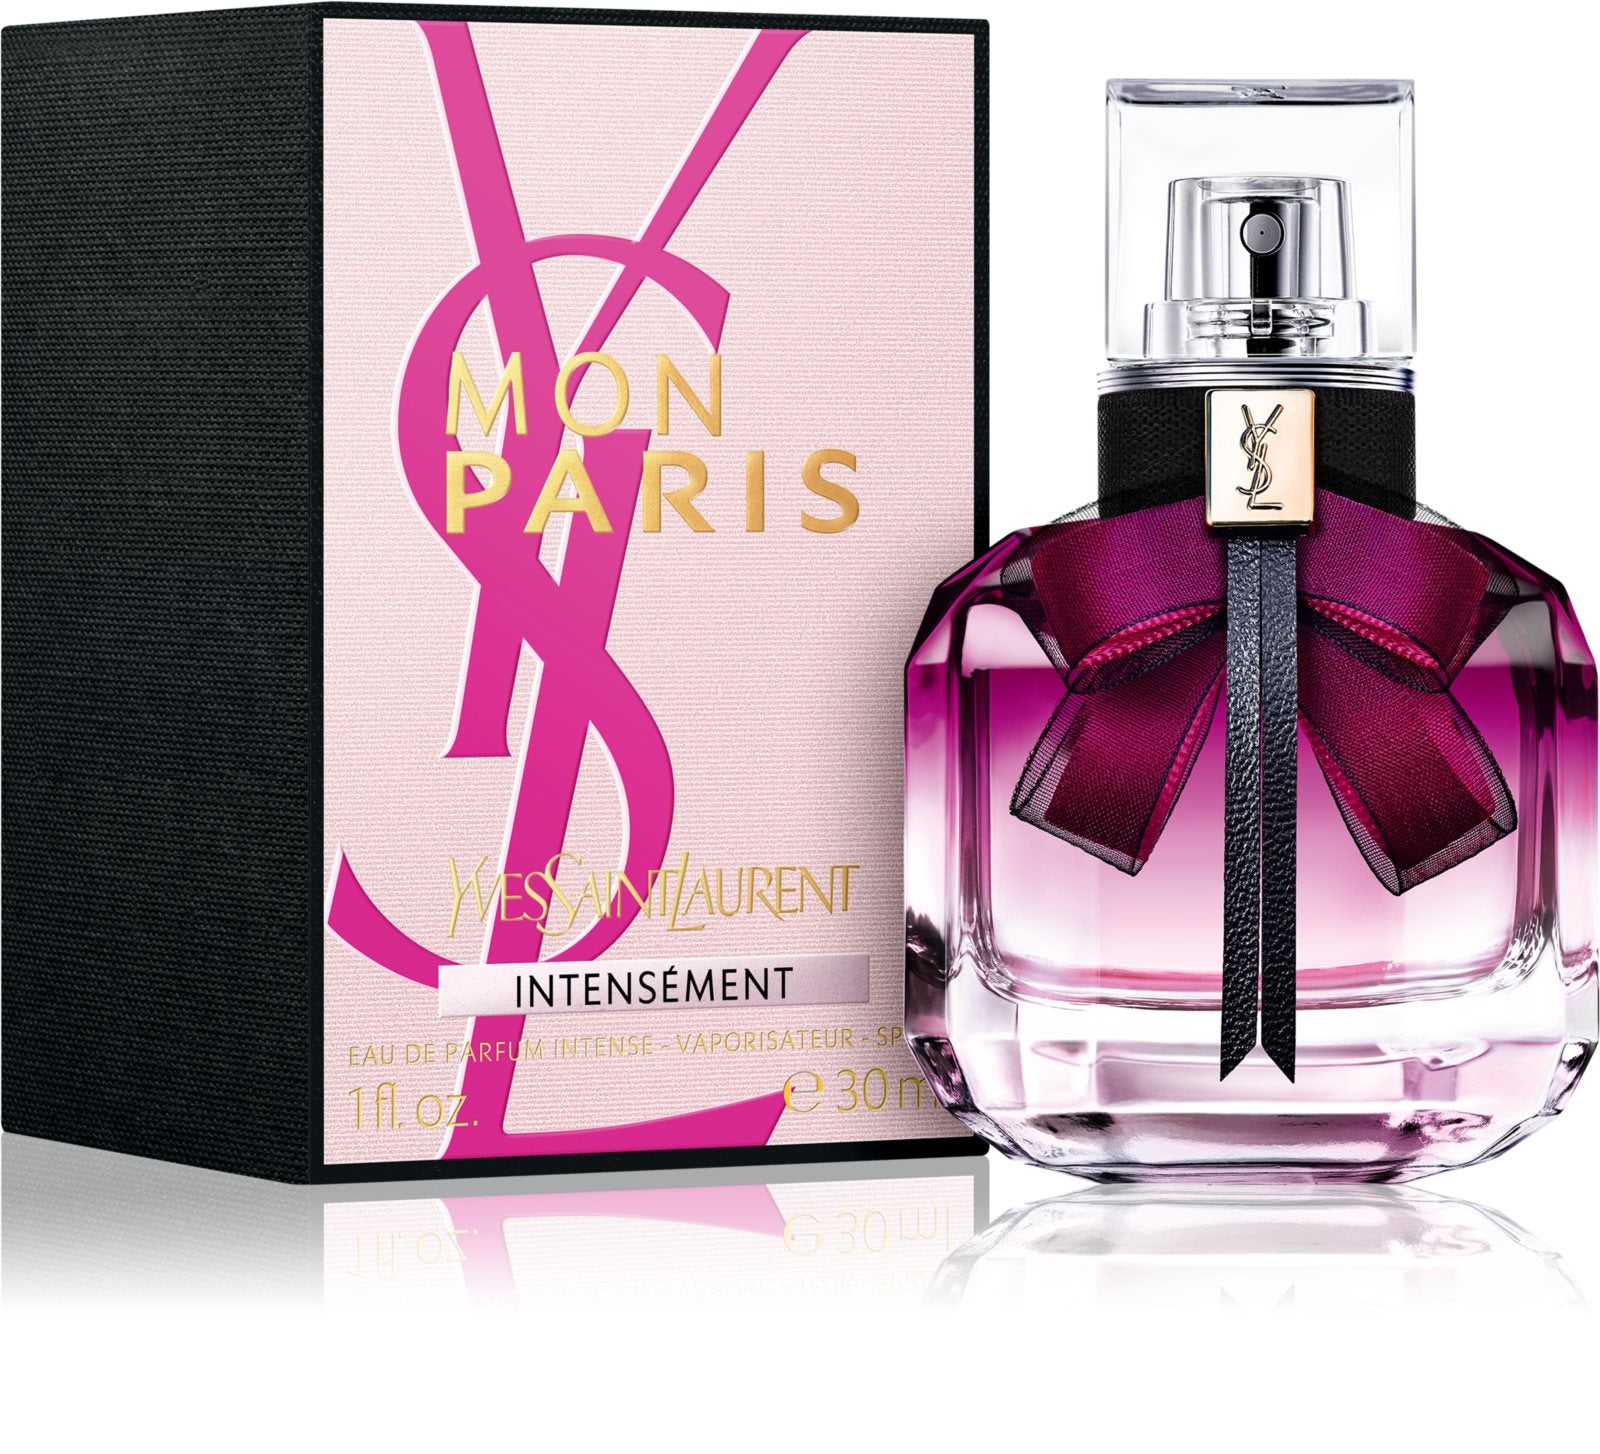 30 Eau Intensément Paris Laurent BS24 – Mon de Saint ml Switzerland AG Yves Parfum